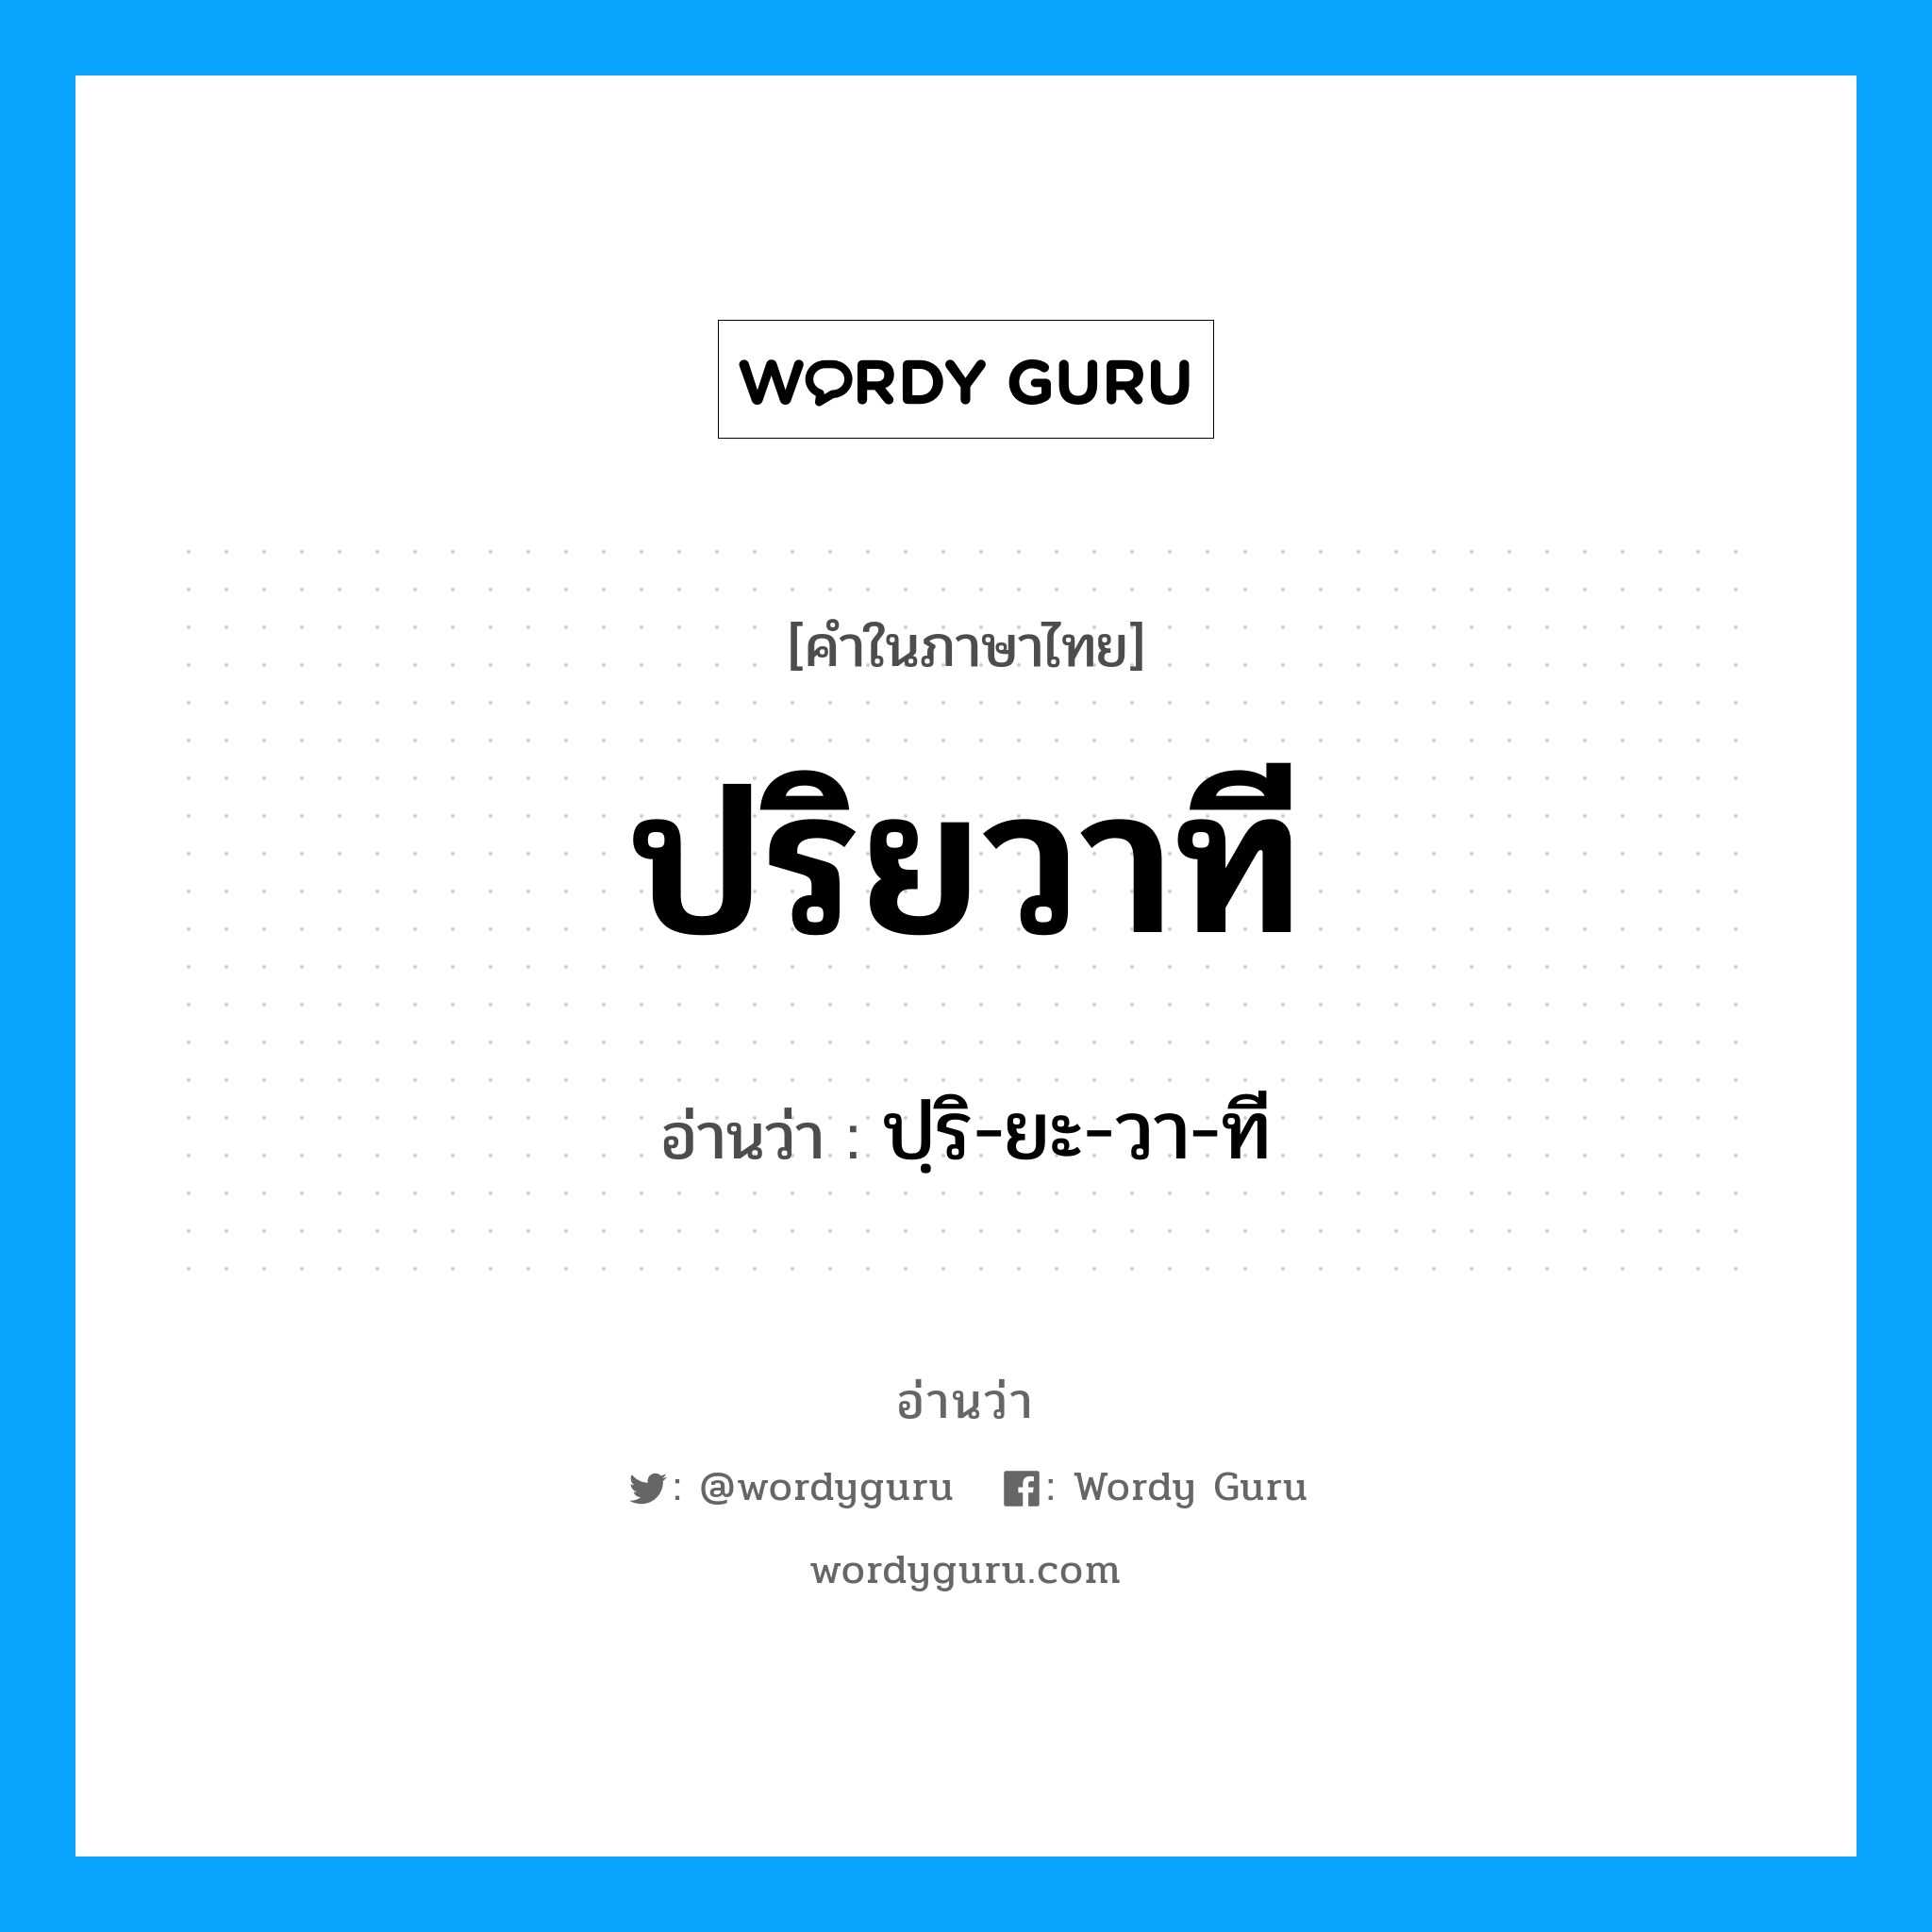 ปฺริ-ยะ-วา-ที เป็นคำอ่านของคำไหน?, คำในภาษาไทย ปฺริ-ยะ-วา-ที อ่านว่า ปริยวาที